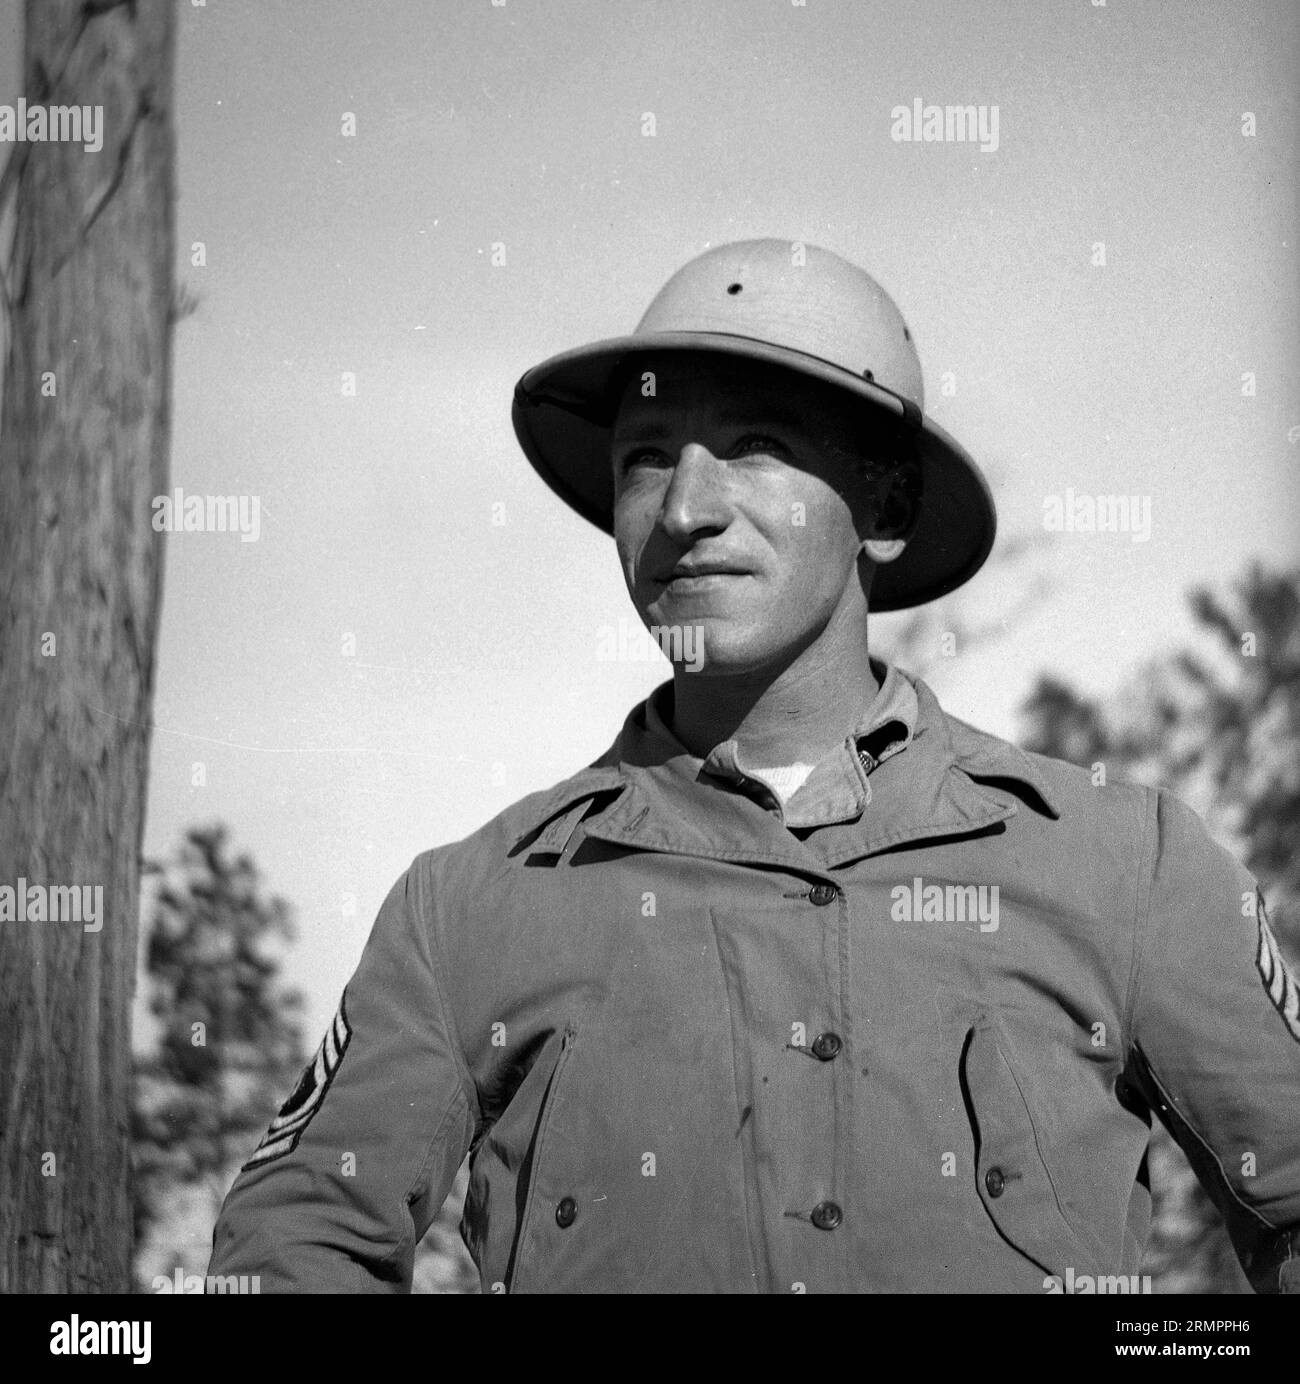 Solider Portrait in Hut. Mitglieder der 114. Infanteriedivision der US-Armee trainieren im Zweiten Weltkrieg gegen Deutschland in Europa. Stockfoto